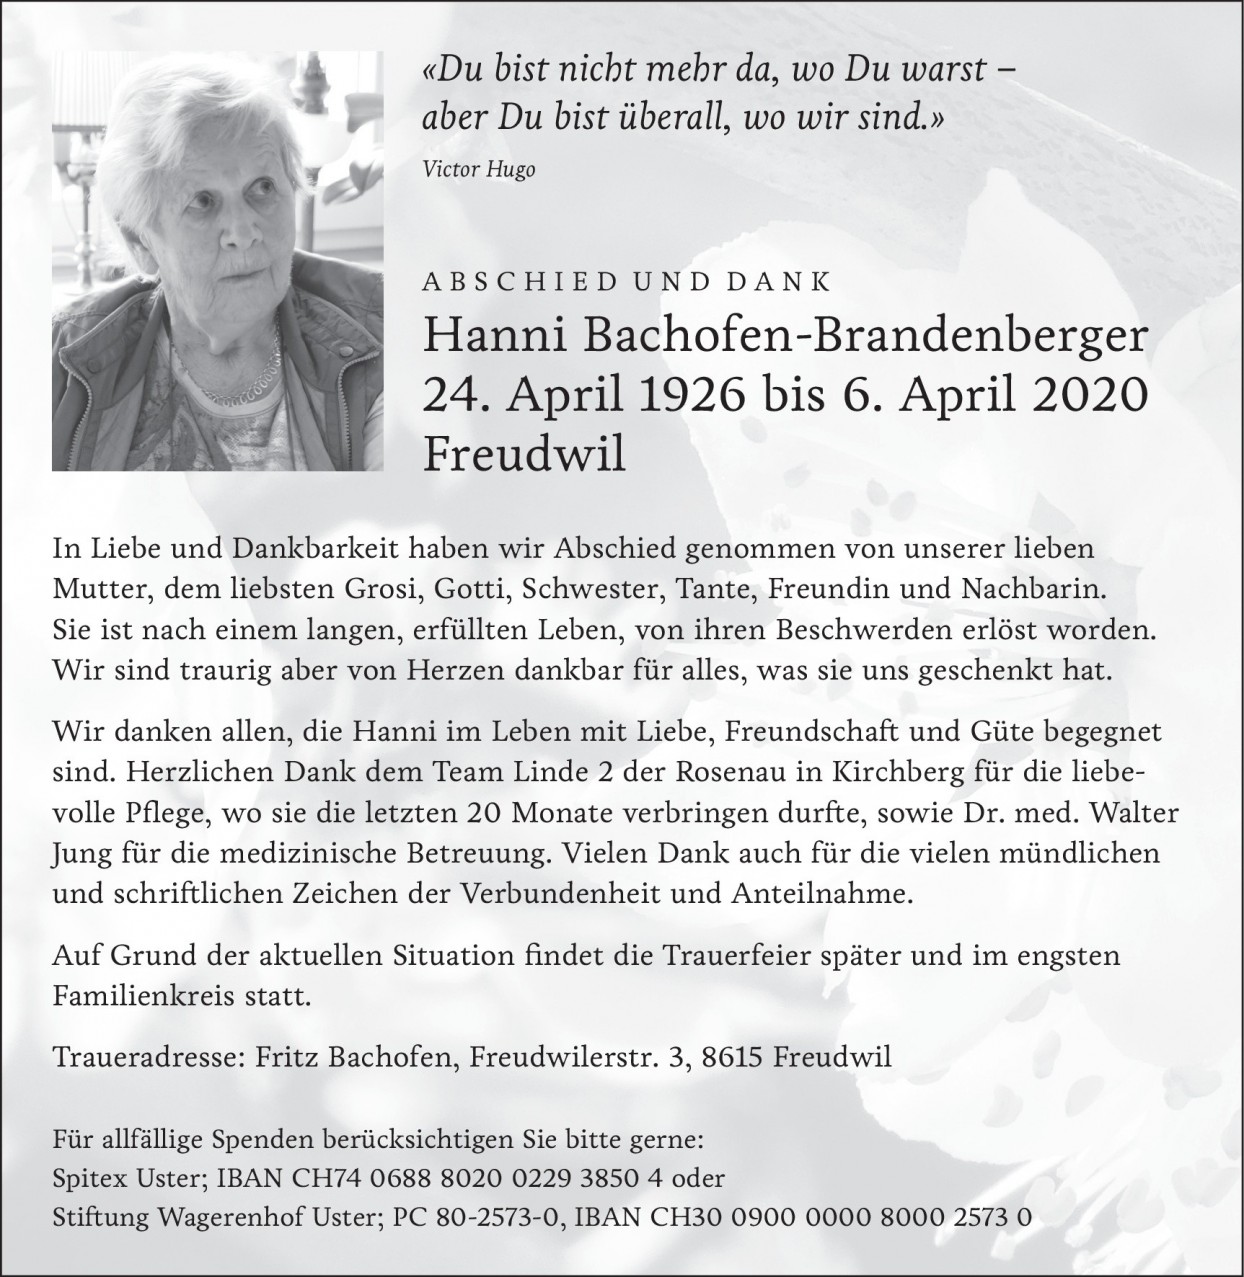 Hanni Bachofen-Brandenberger